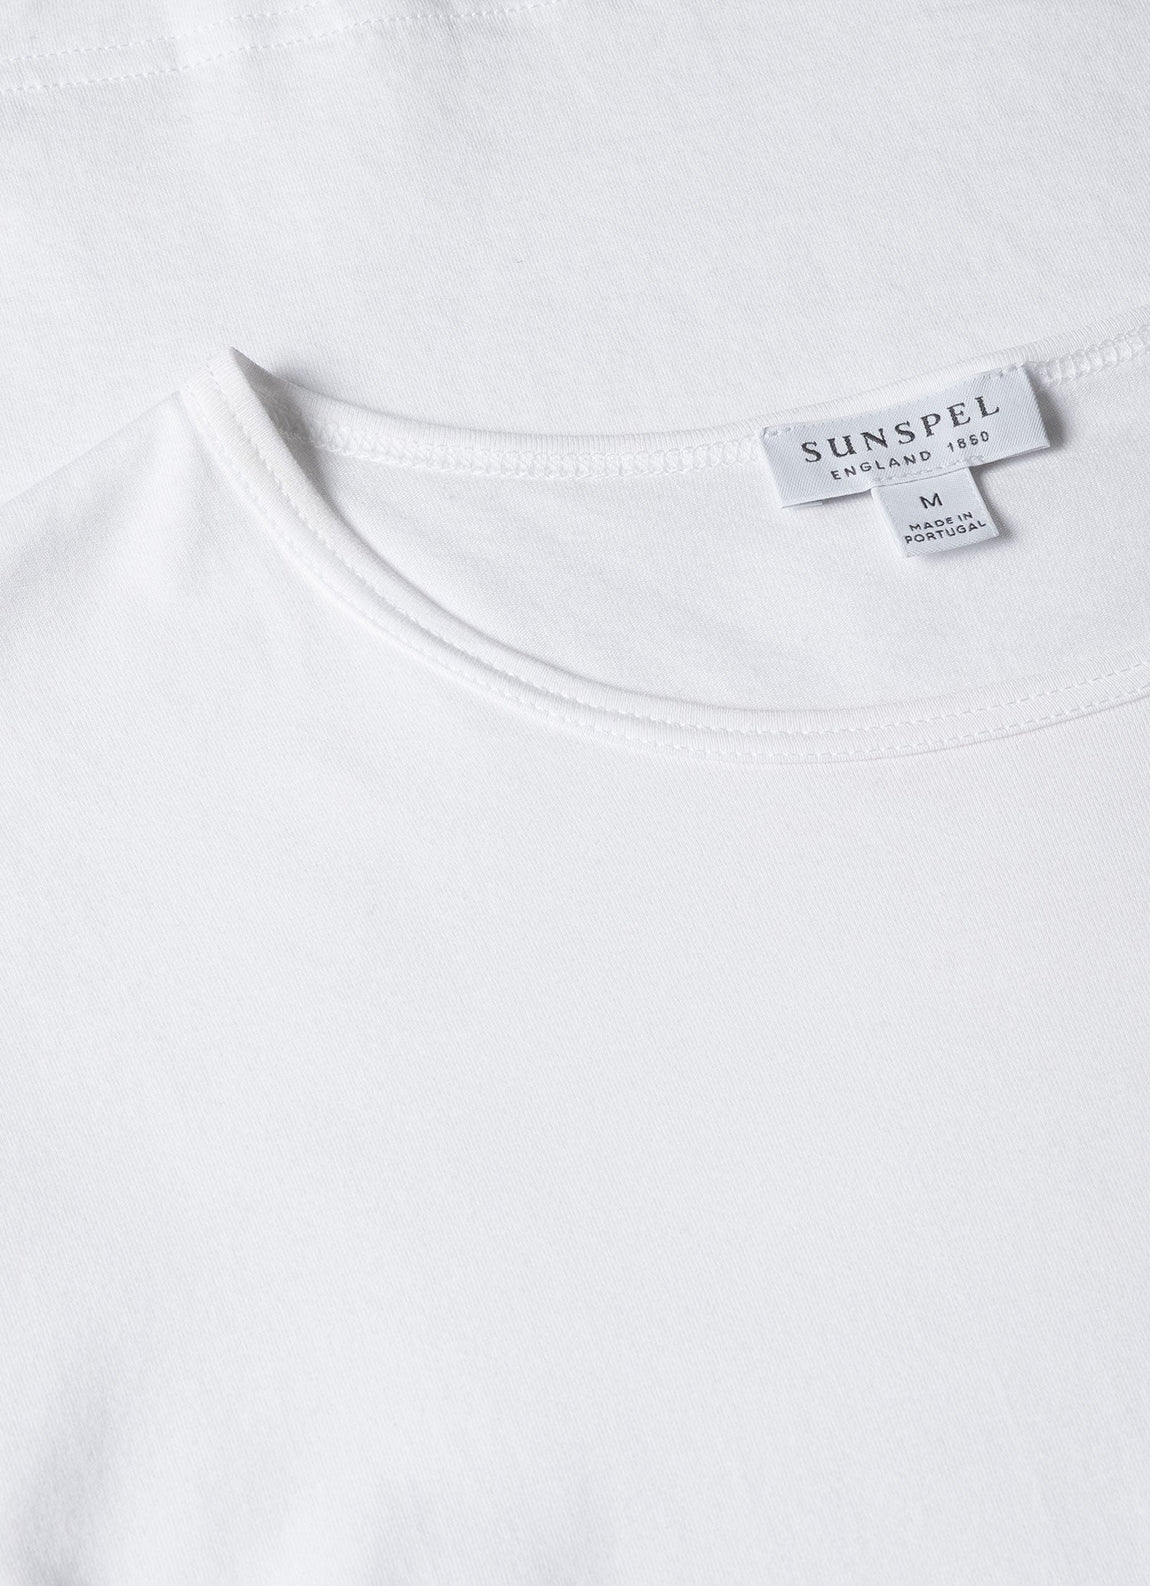 Men's Superfine Cotton Underwear T-shirt in White